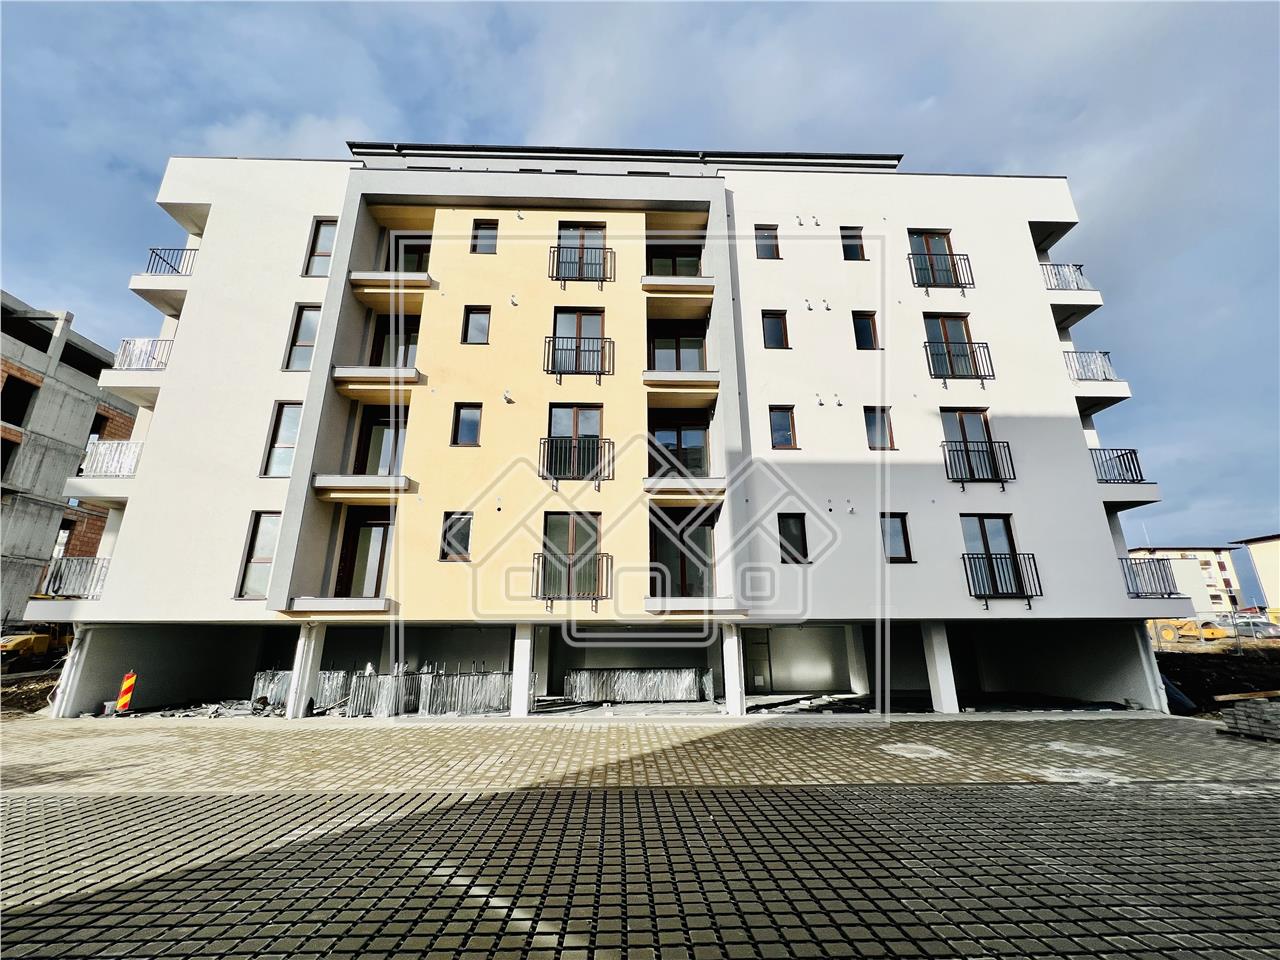 Wohnung zu verkaufen in Sibiu - Terrasse 32 qm -Aufzug und Abstellraum